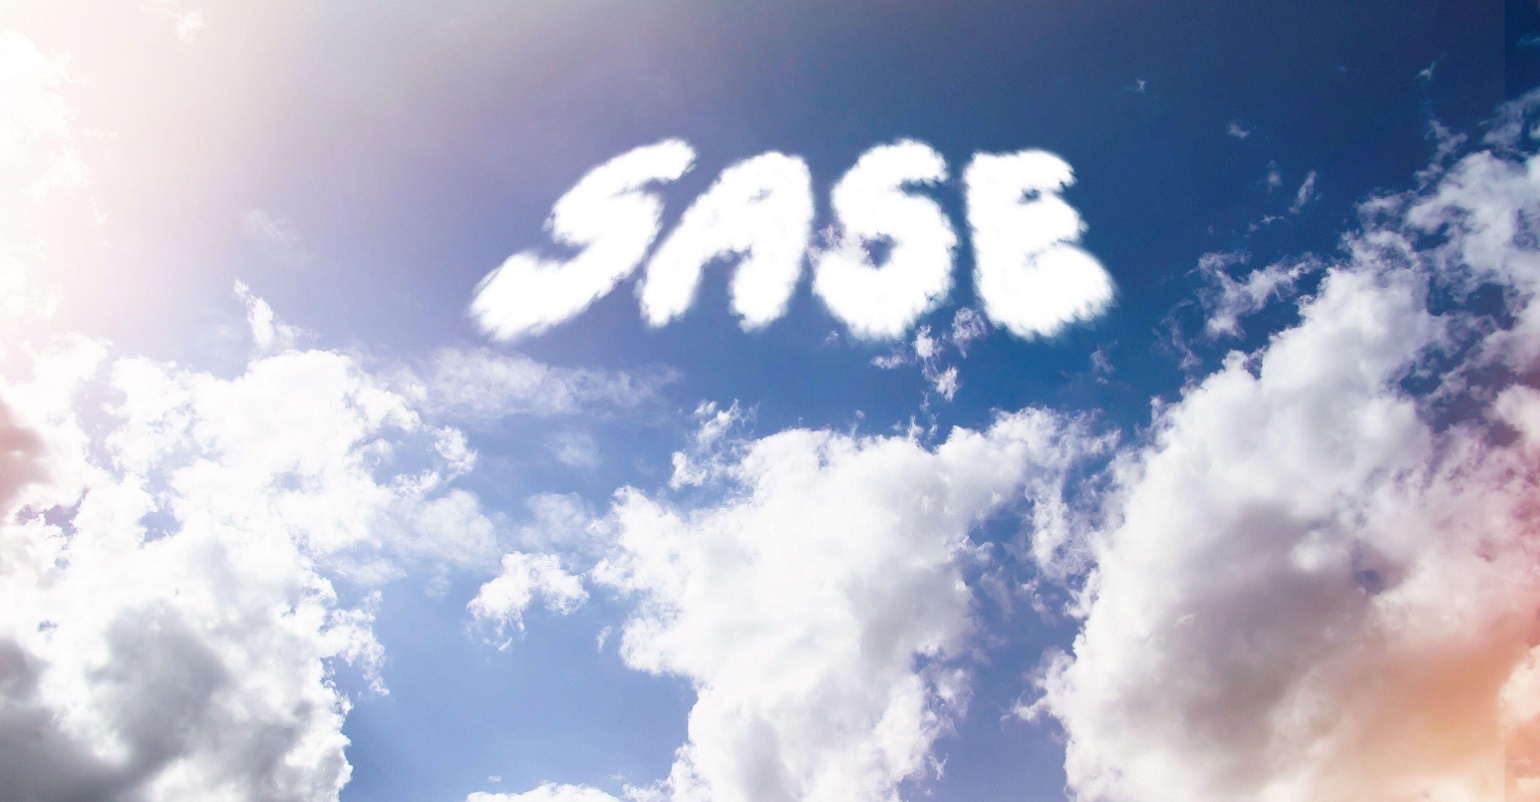 SASE written in clouds